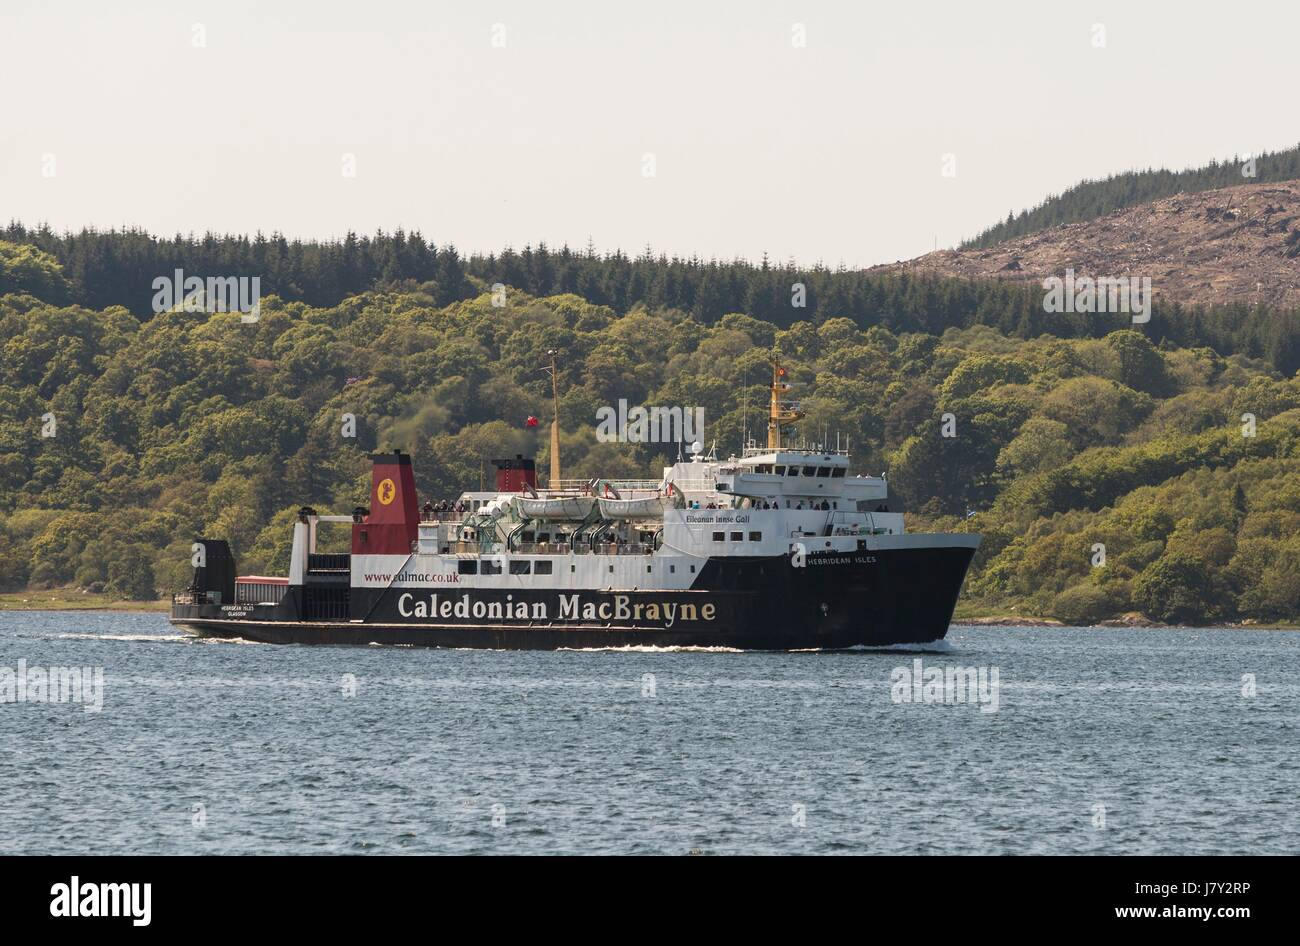 MV Hebriden Inseln ist ein Roll-on / Roll-off-Fähre von Calmac zwischen Kennacraig auf der Westküste von Schottland und Islay betrieben. Auf Islay dockt es an ETI Stockfoto